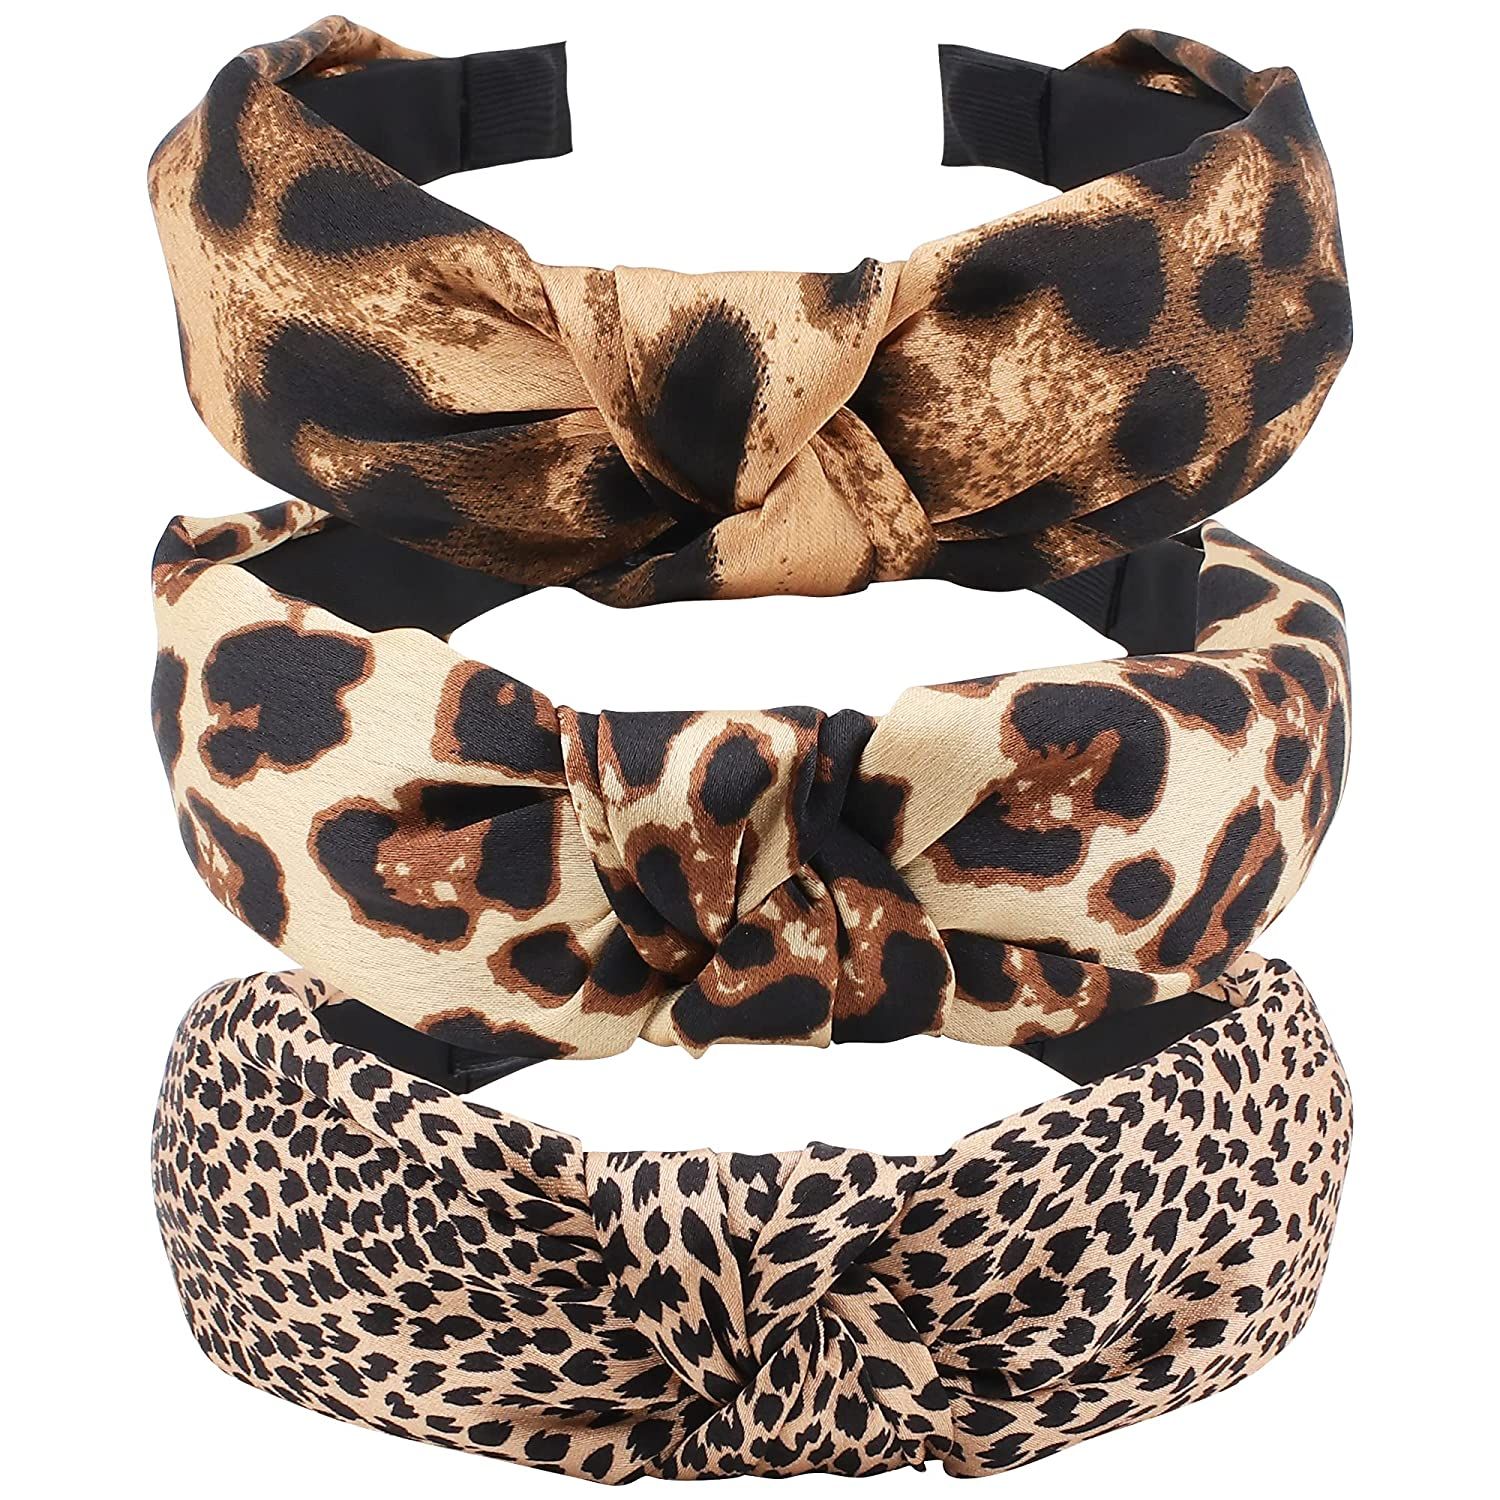 Leopard Headband, TOBATOBA 3Pcs Leopard Print Headbands for Women, Top Knot Headband for Women, C... | Amazon (US)